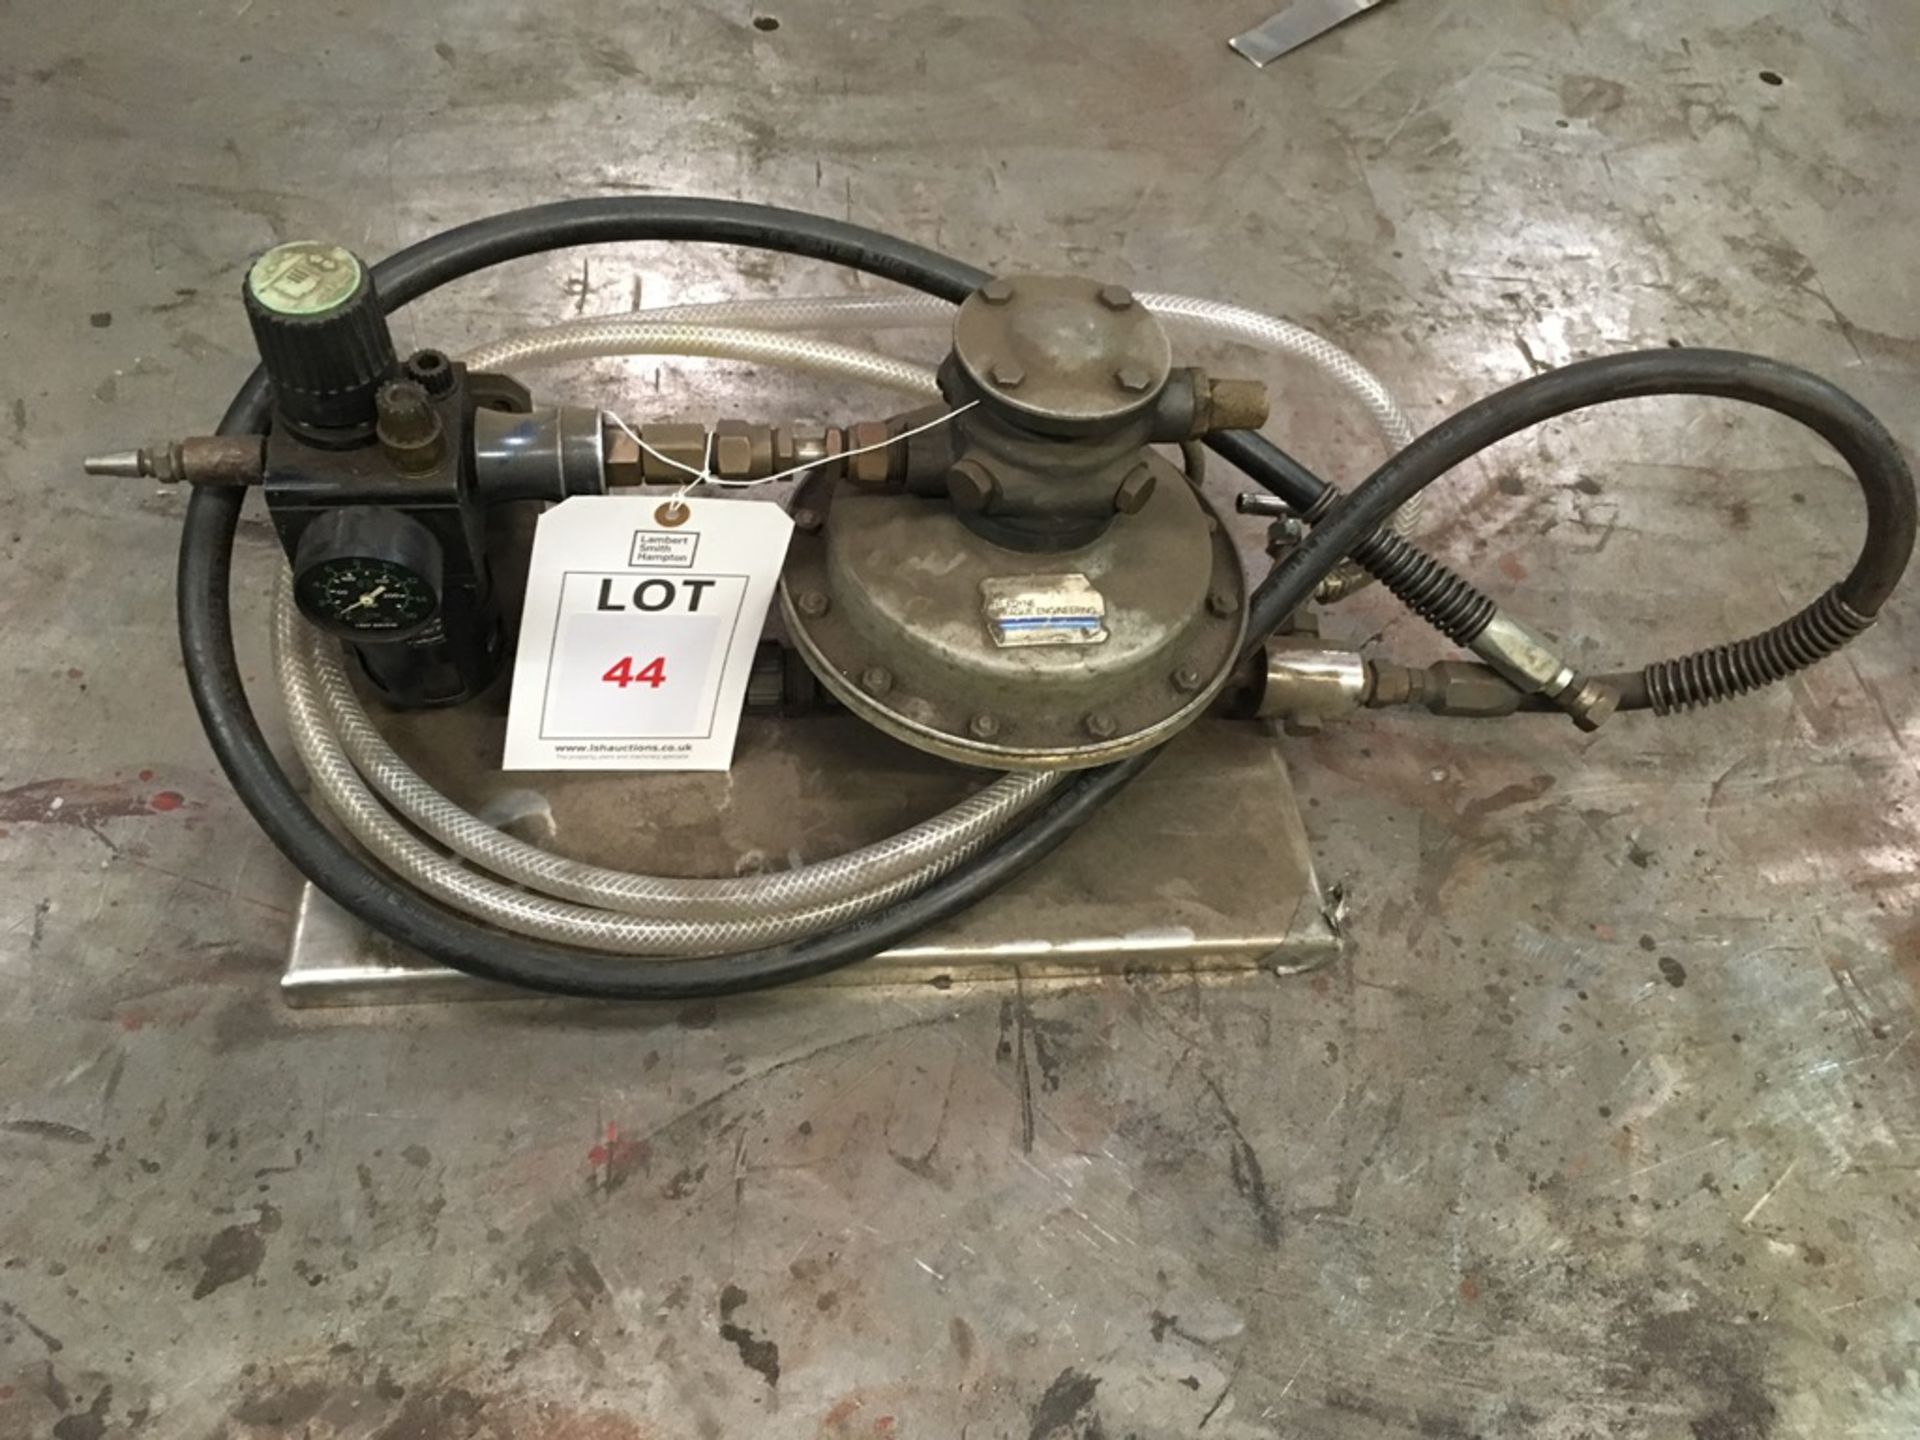 Automatic hydro pressure tester (5000 psi)